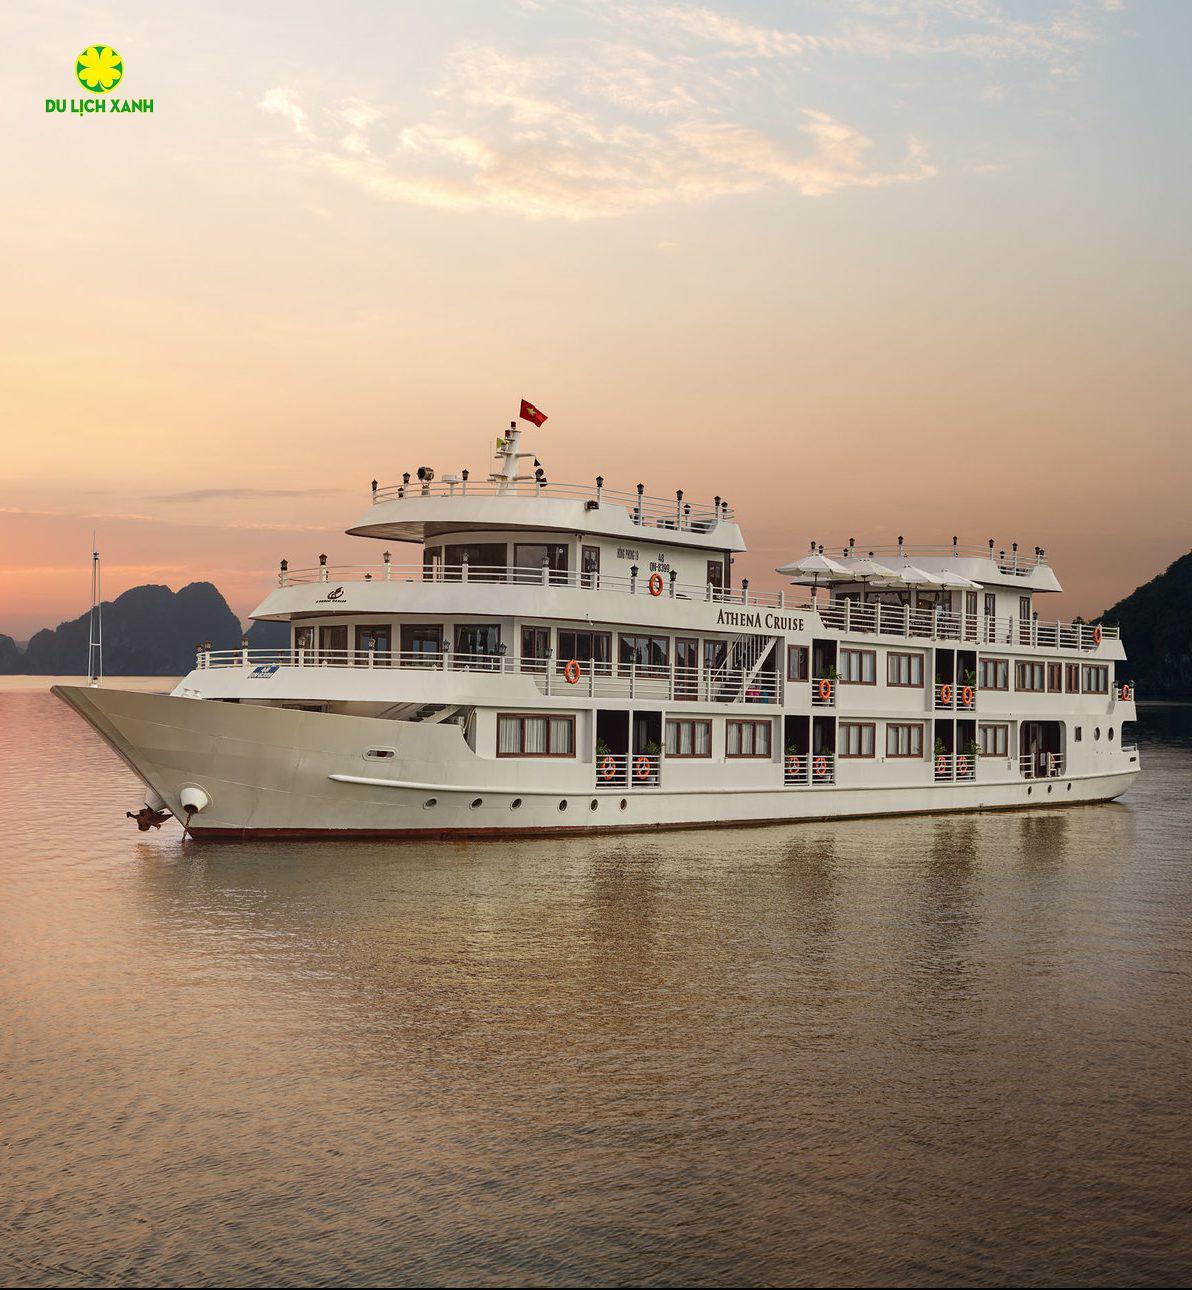 Du thuyền Athena Royal, Athena Royal Cruise, Tour du thuyền Hạ Long, Du Lịch Xanh